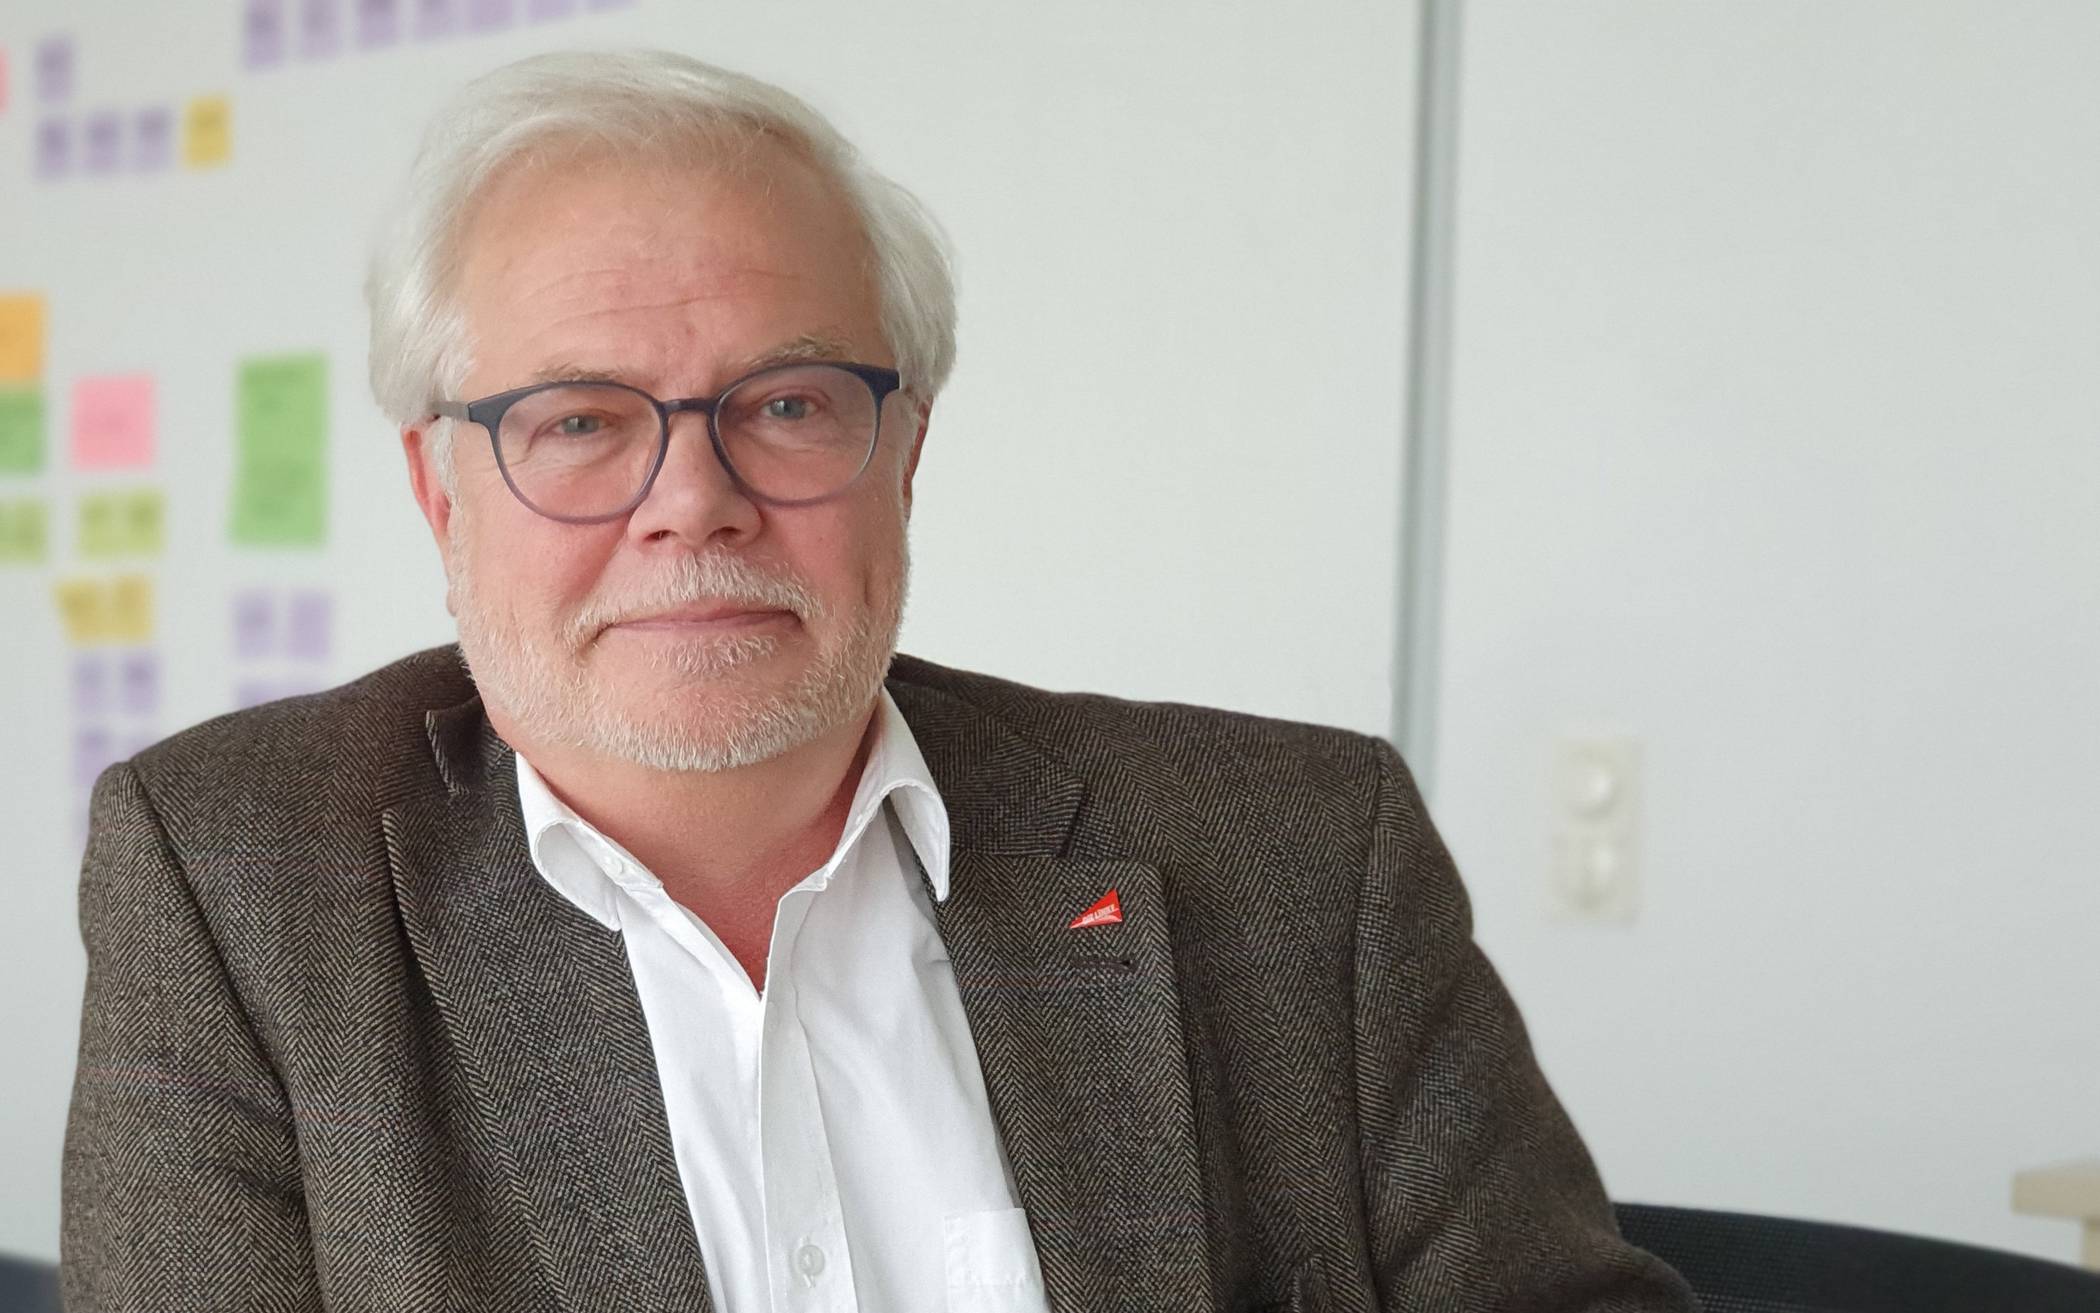   Bernhard Sander kandidiert für „Die Linke“ als Oberbürgermeister.  